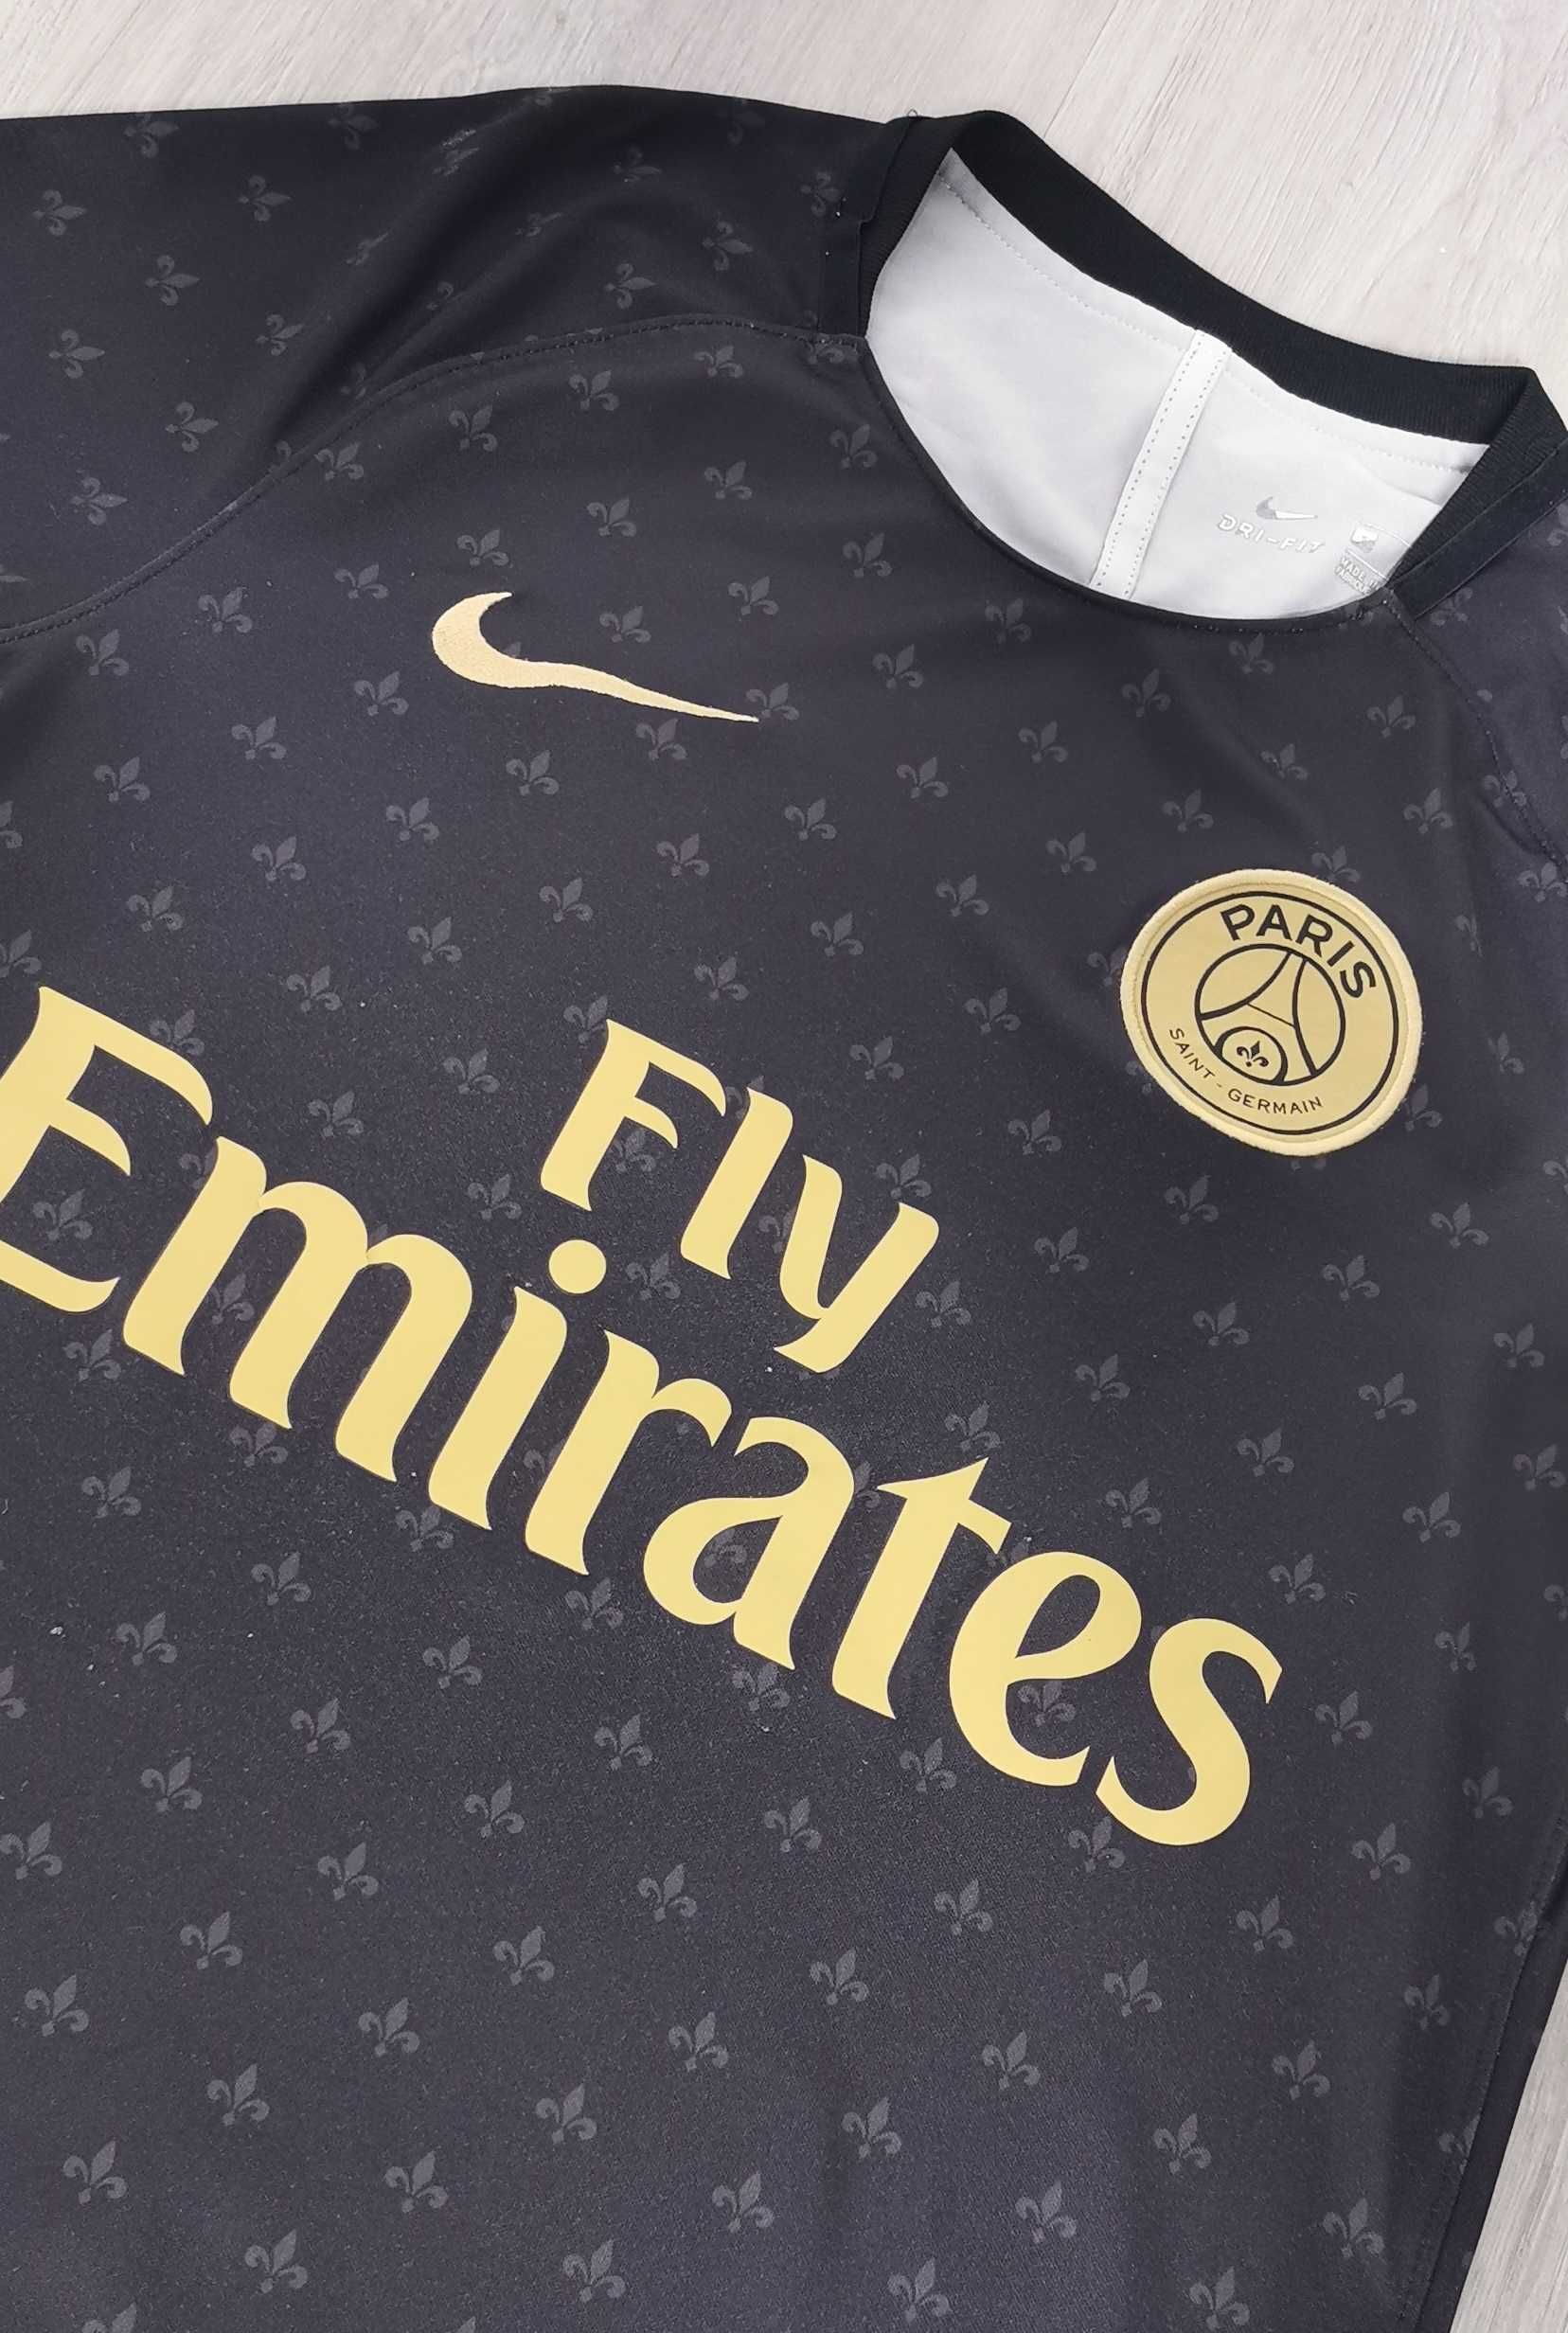 T-shirt sportowy Nike Paris Saint Germain black czarny size rozmiar S